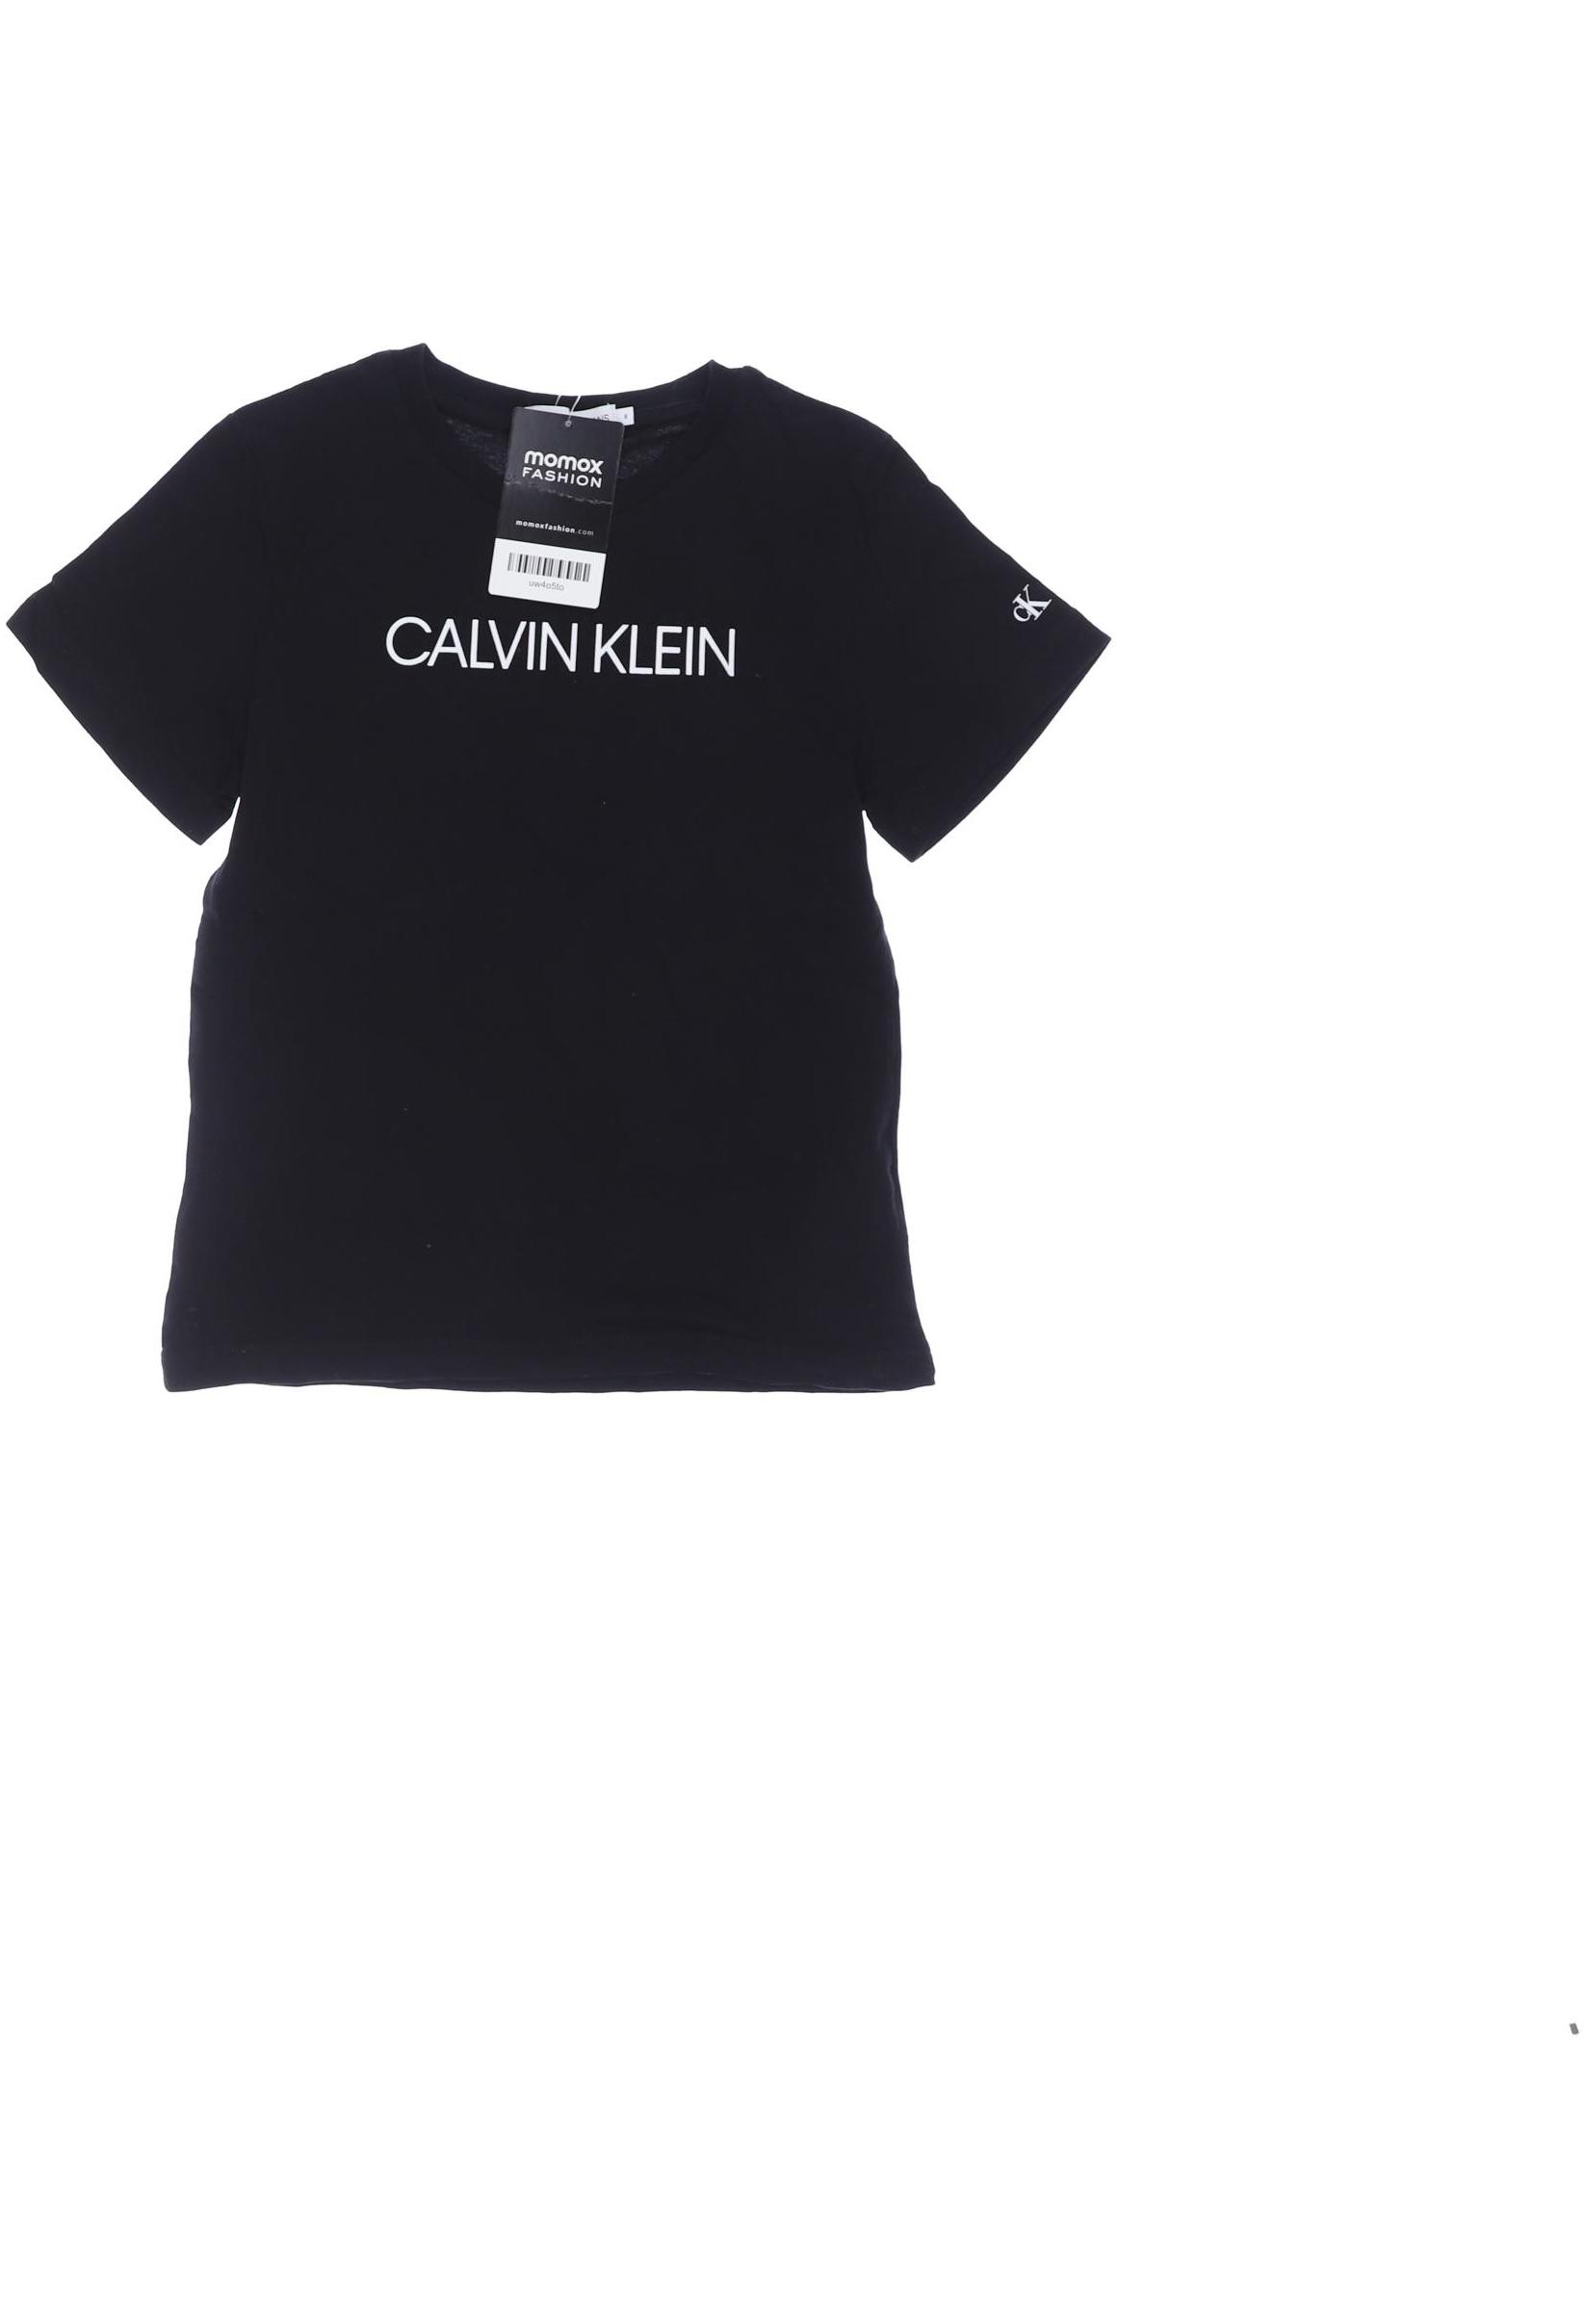 Calvin Klein Jeans Jungen T-Shirt, schwarz von Calvin Klein Jeans